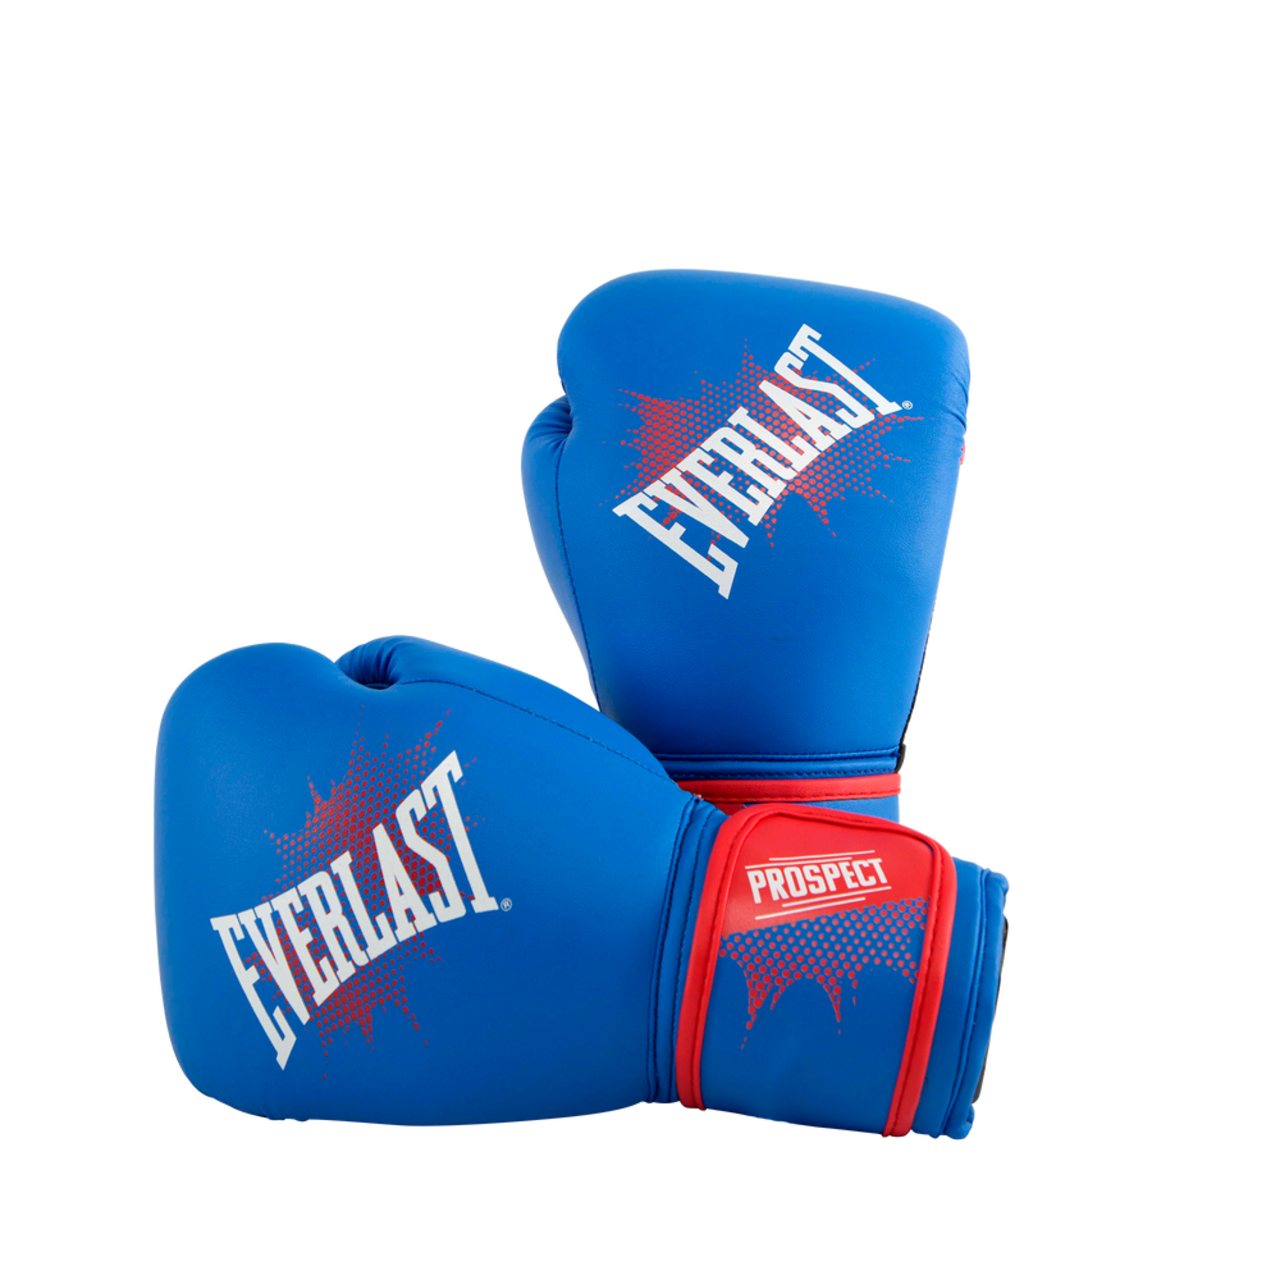 Everlast Elite Pro Style Training Gloves, Blue, 8 oz, Training Gloves -   Canada